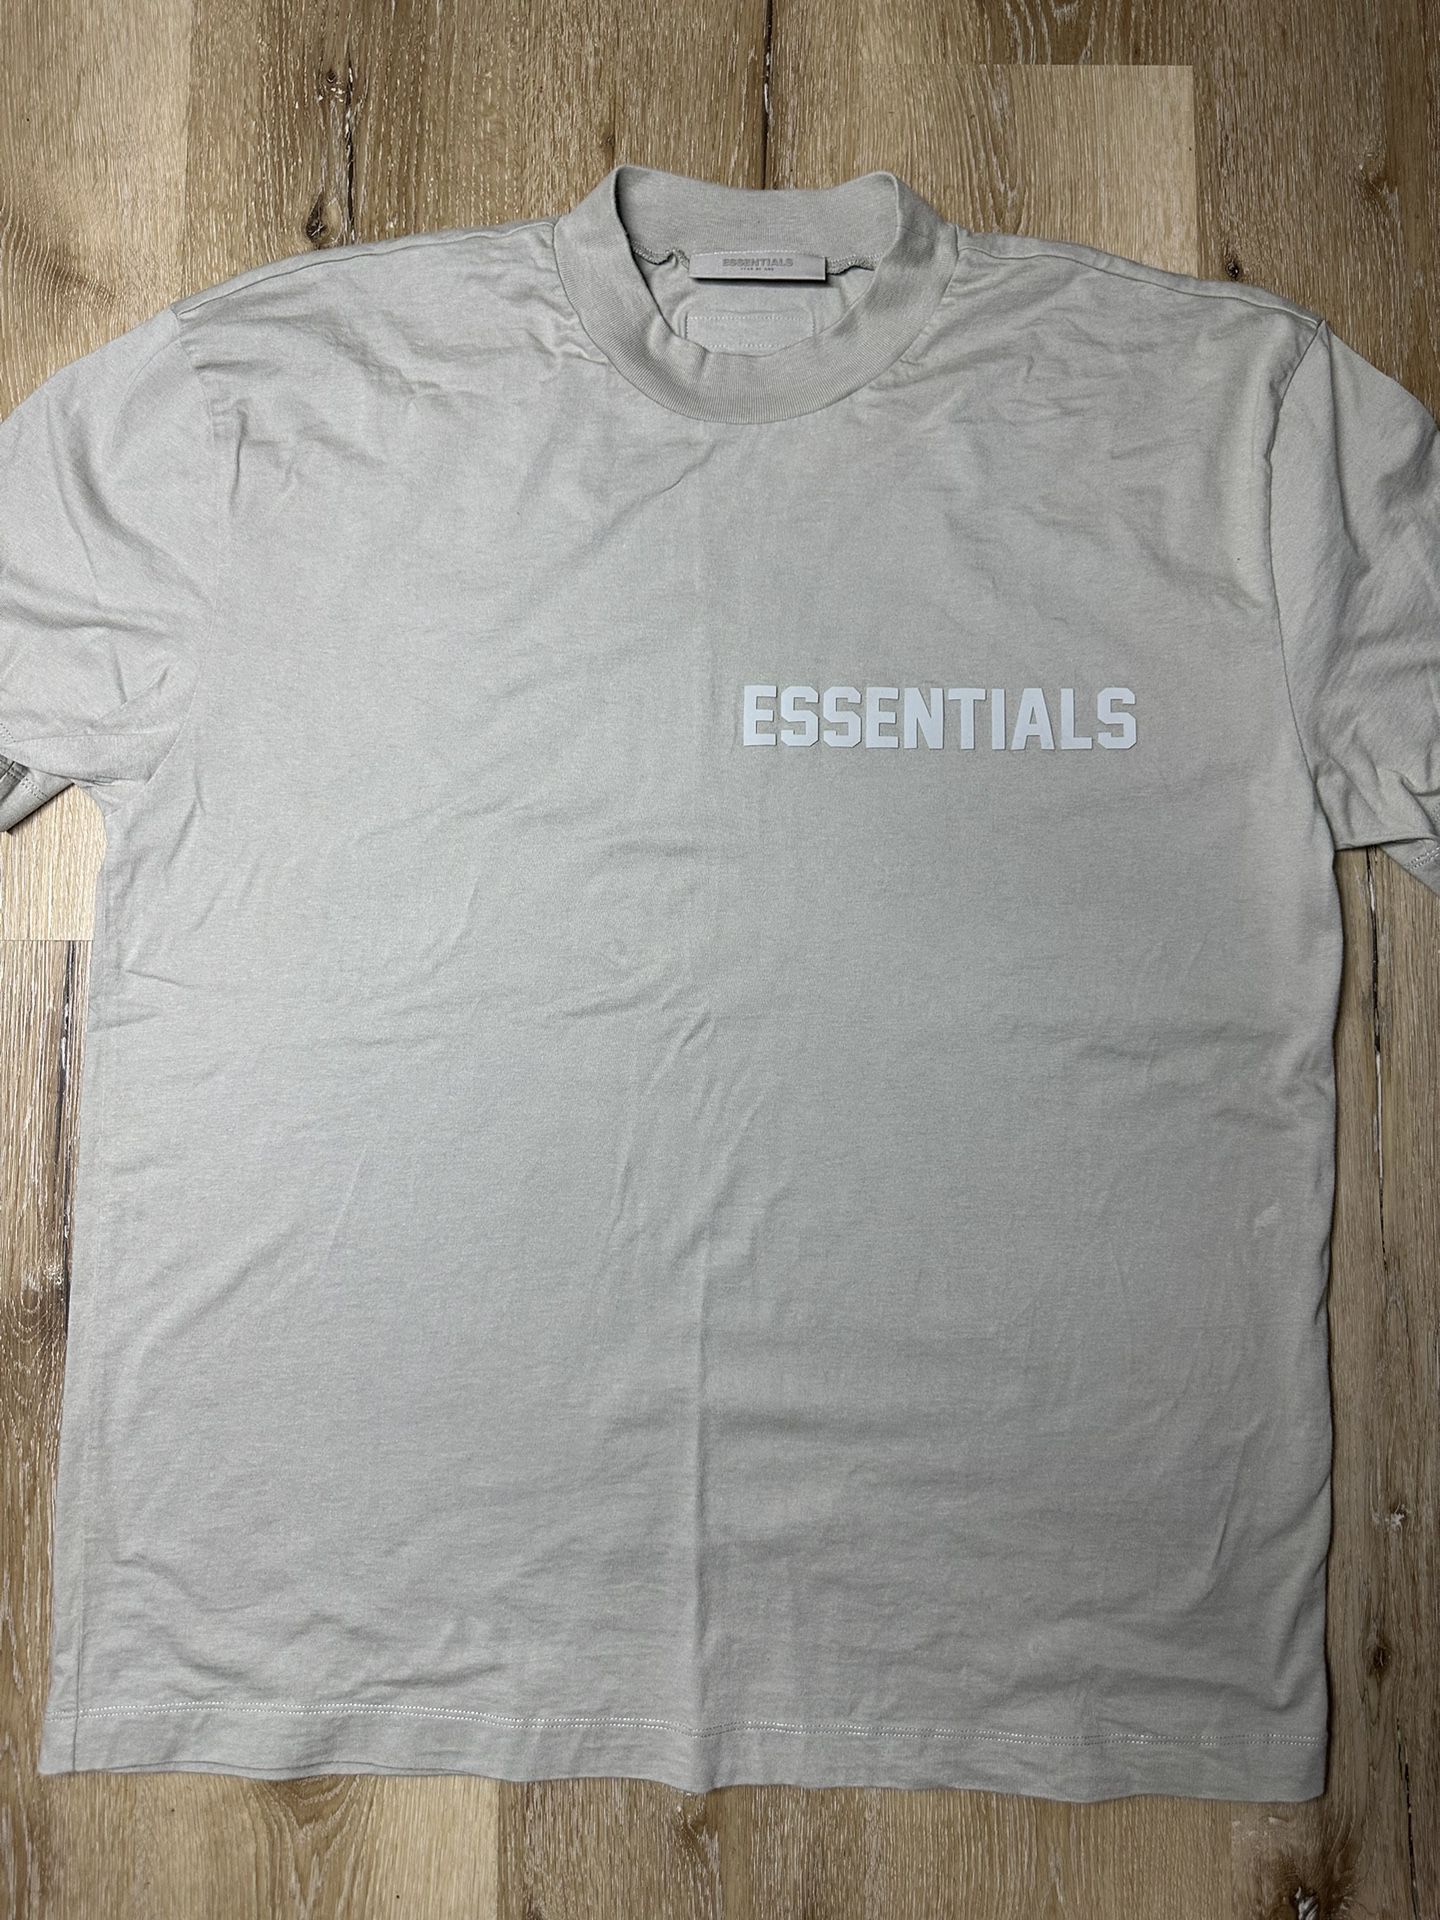 Authentic essentials Shirt